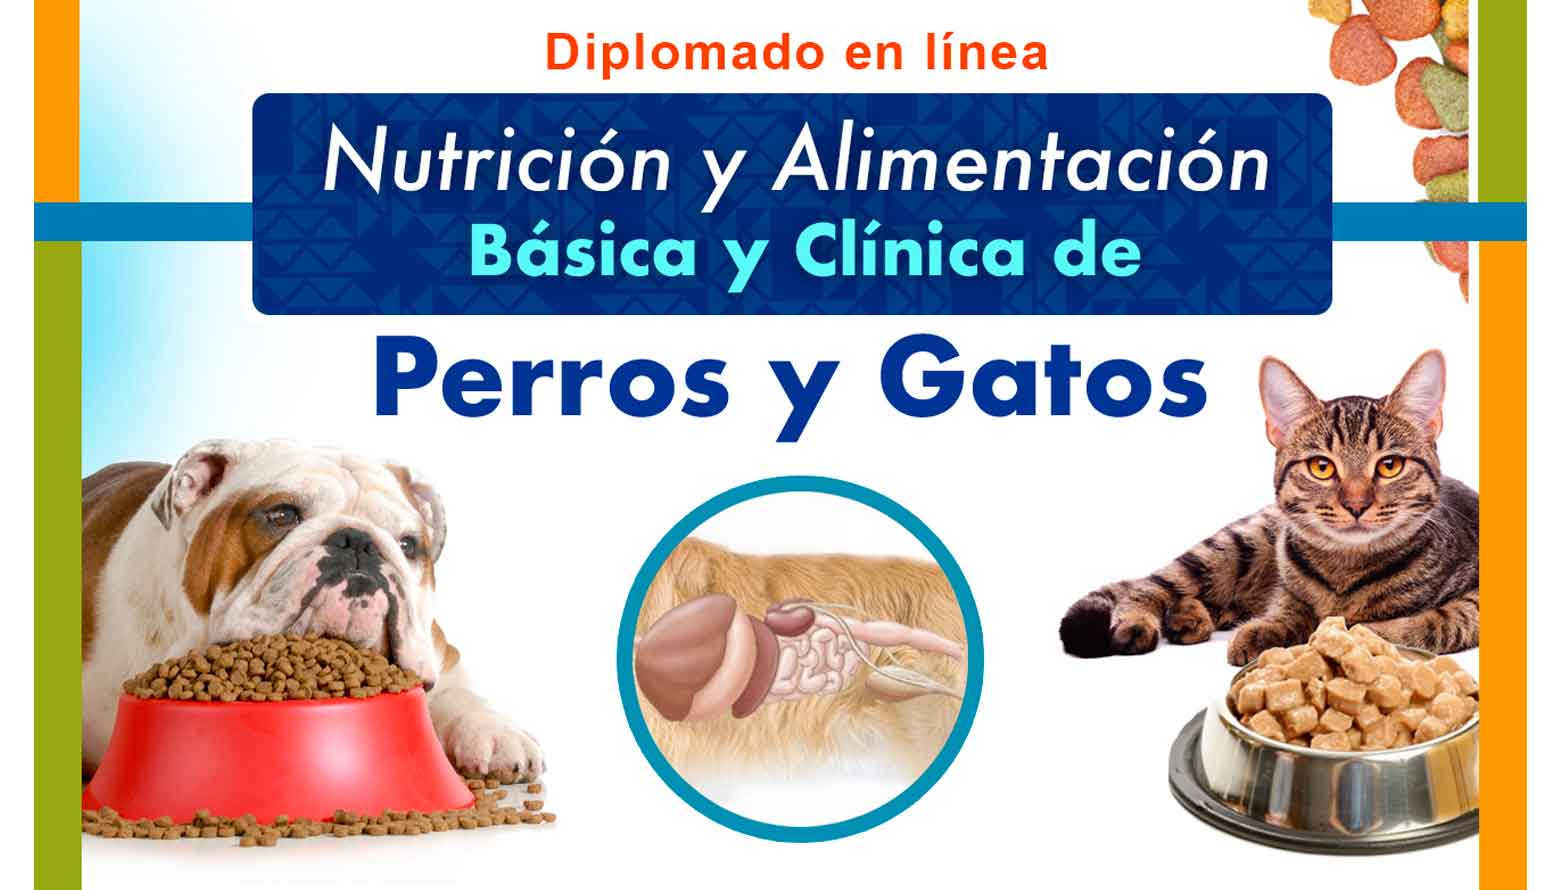 Diplomado: Nutrición y alimentación básica y clínica de perros y gatos